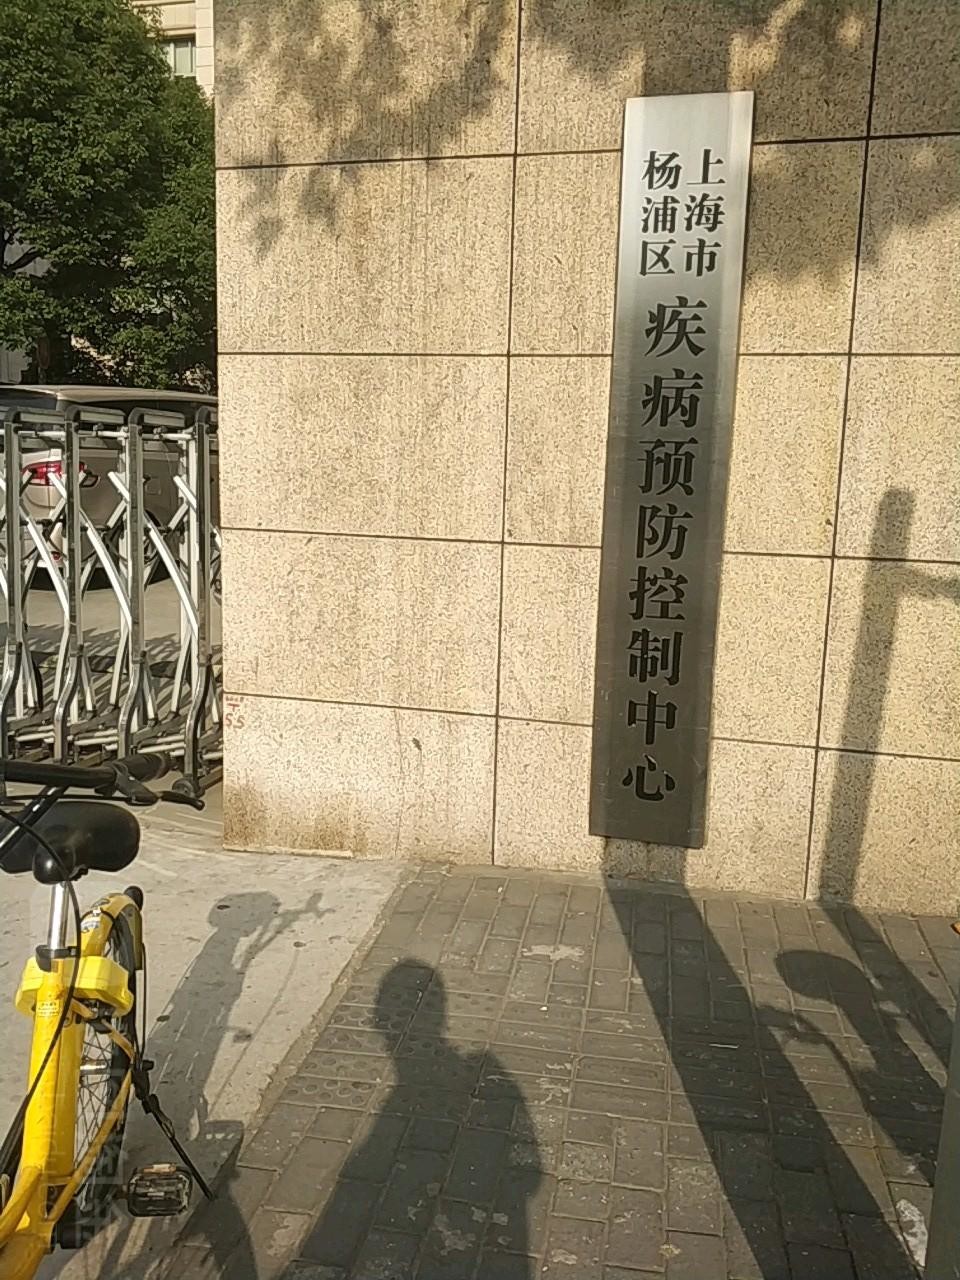 mais recente caso da empresa sobre Controlo de enfermidades do distrito de Shanghai Yangpu e centro da prevenção